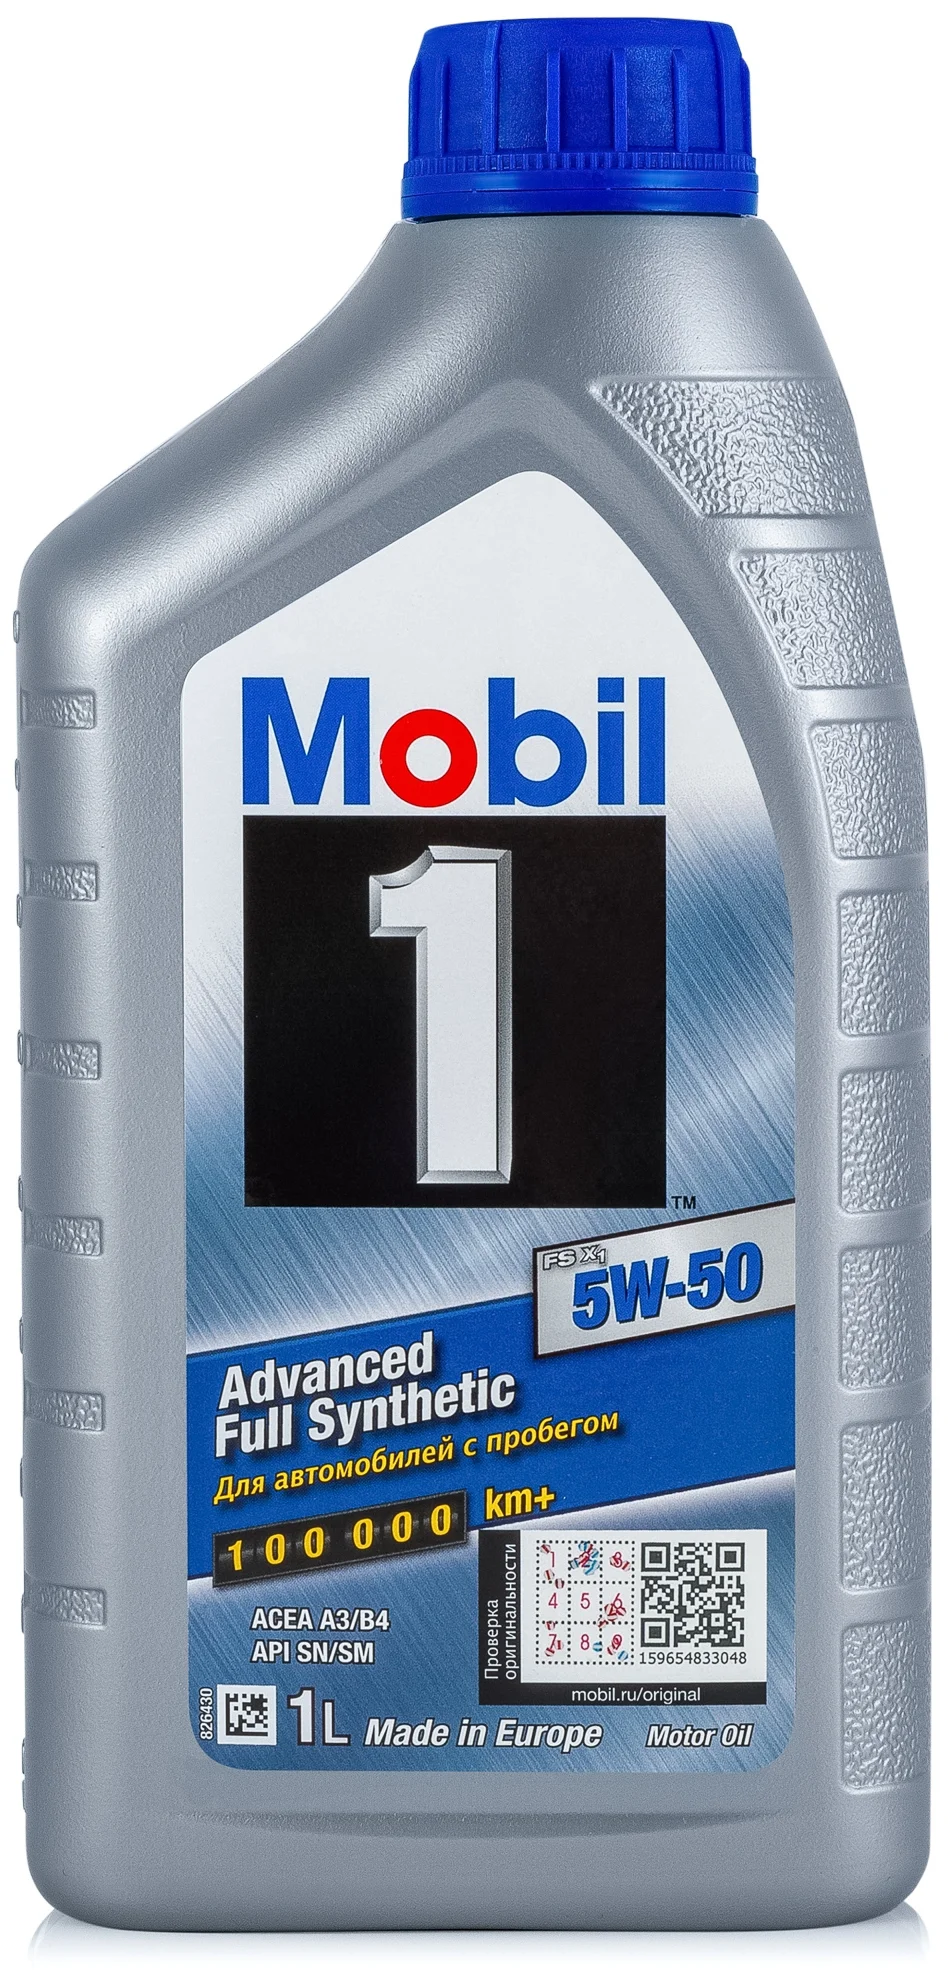 MOBIL 1 FS X1 5W-50 - класс вязкости: 5W-50